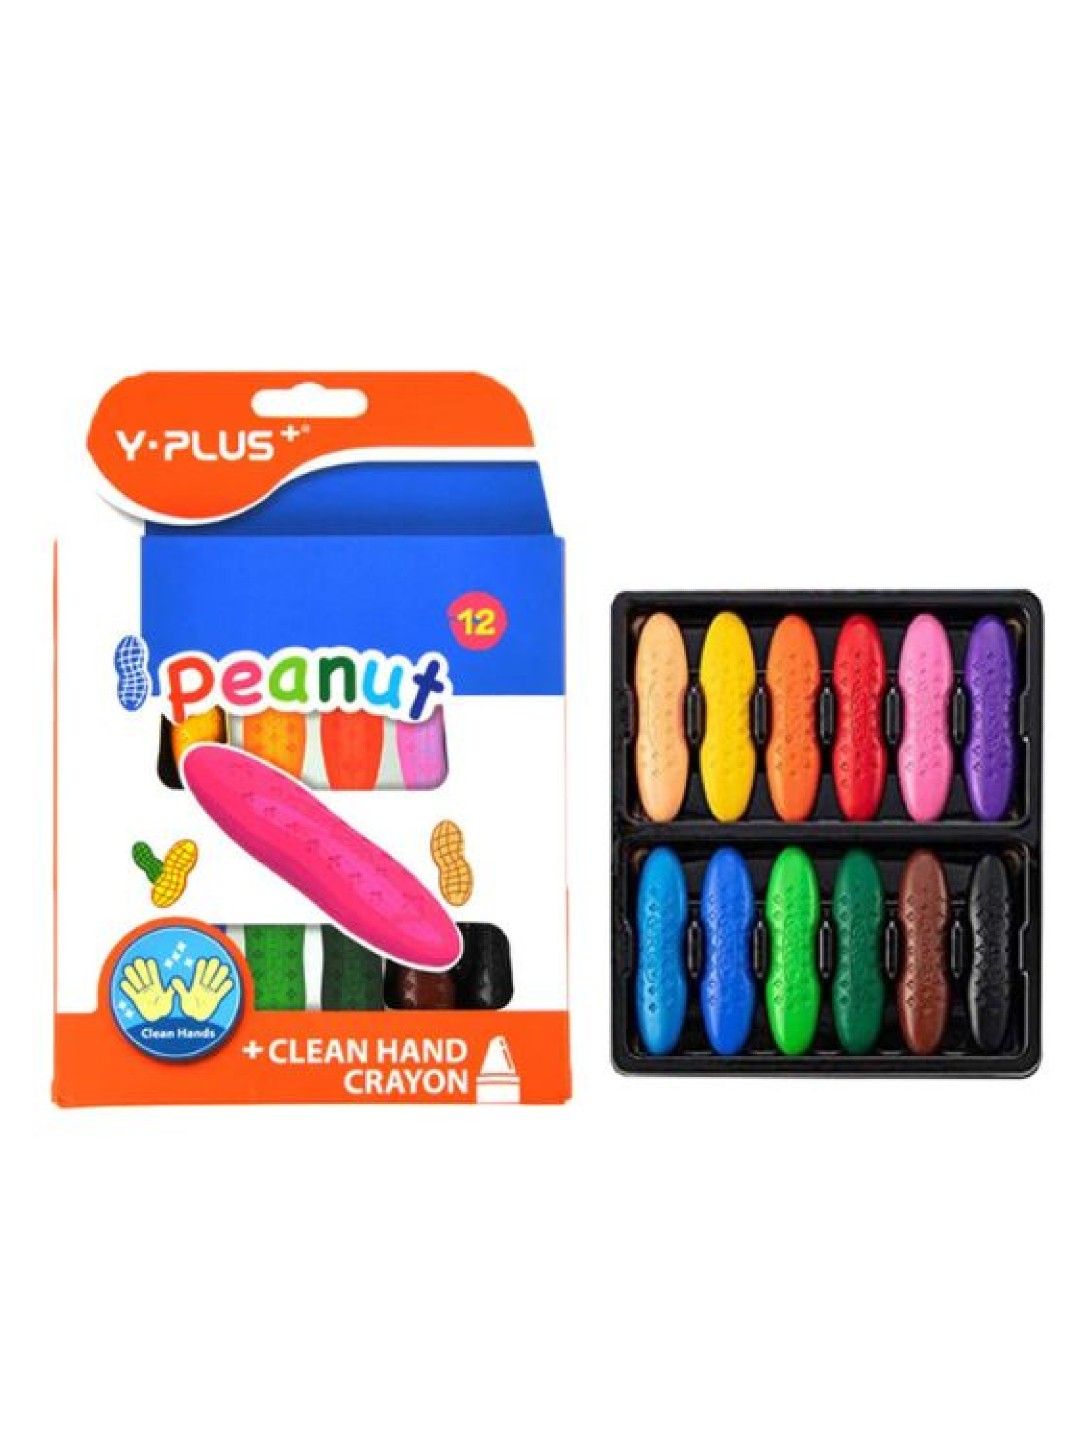 Y-PLUS+ Non-Toxic Peanut Crayons (12 Colors)